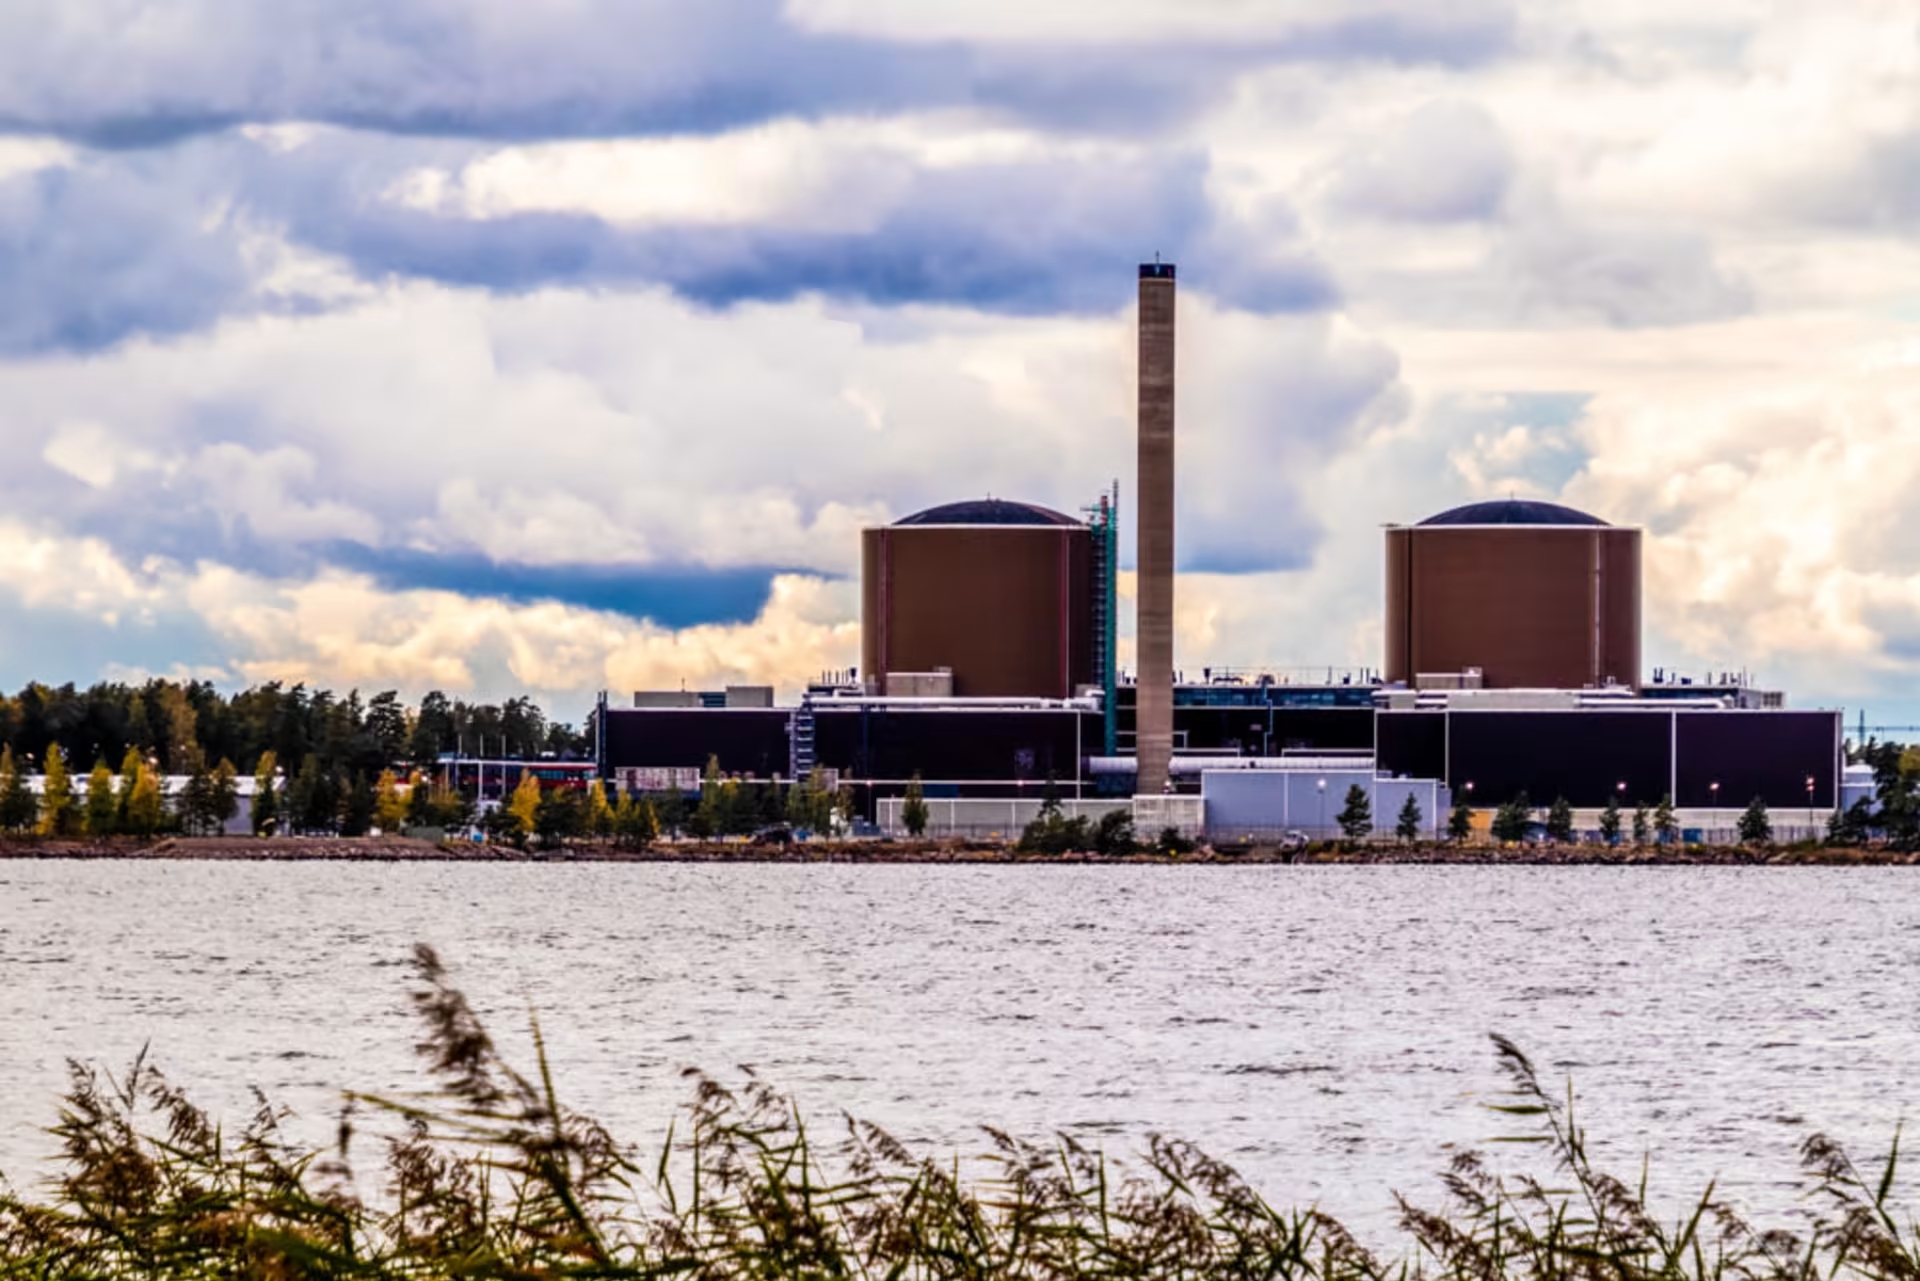 АЭС «Ловииса» расположена на острове Хястхолмен, недалеко от города Ловииса. Фото: Mikael Kokkola / Yle